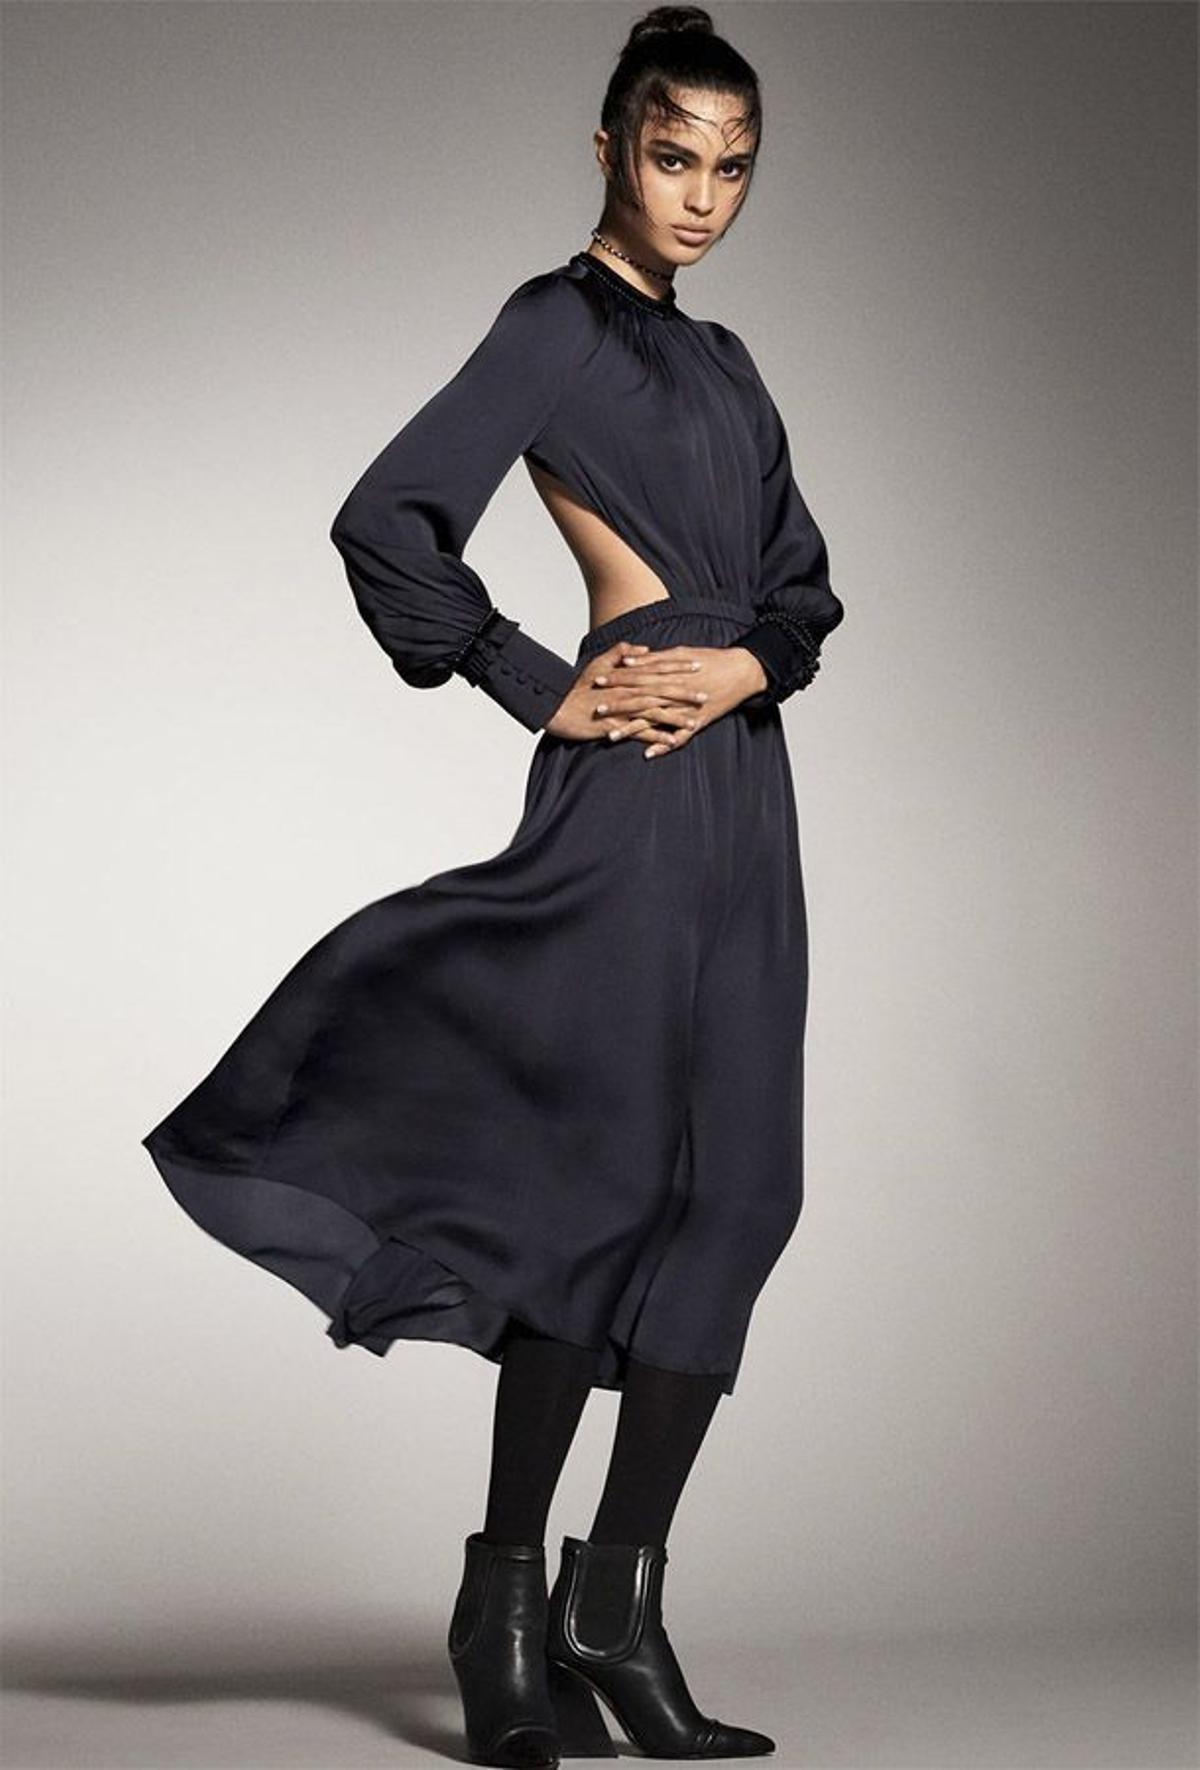 Campaña de Zara otoño-invierno 2017: vestido con escote a la espalda